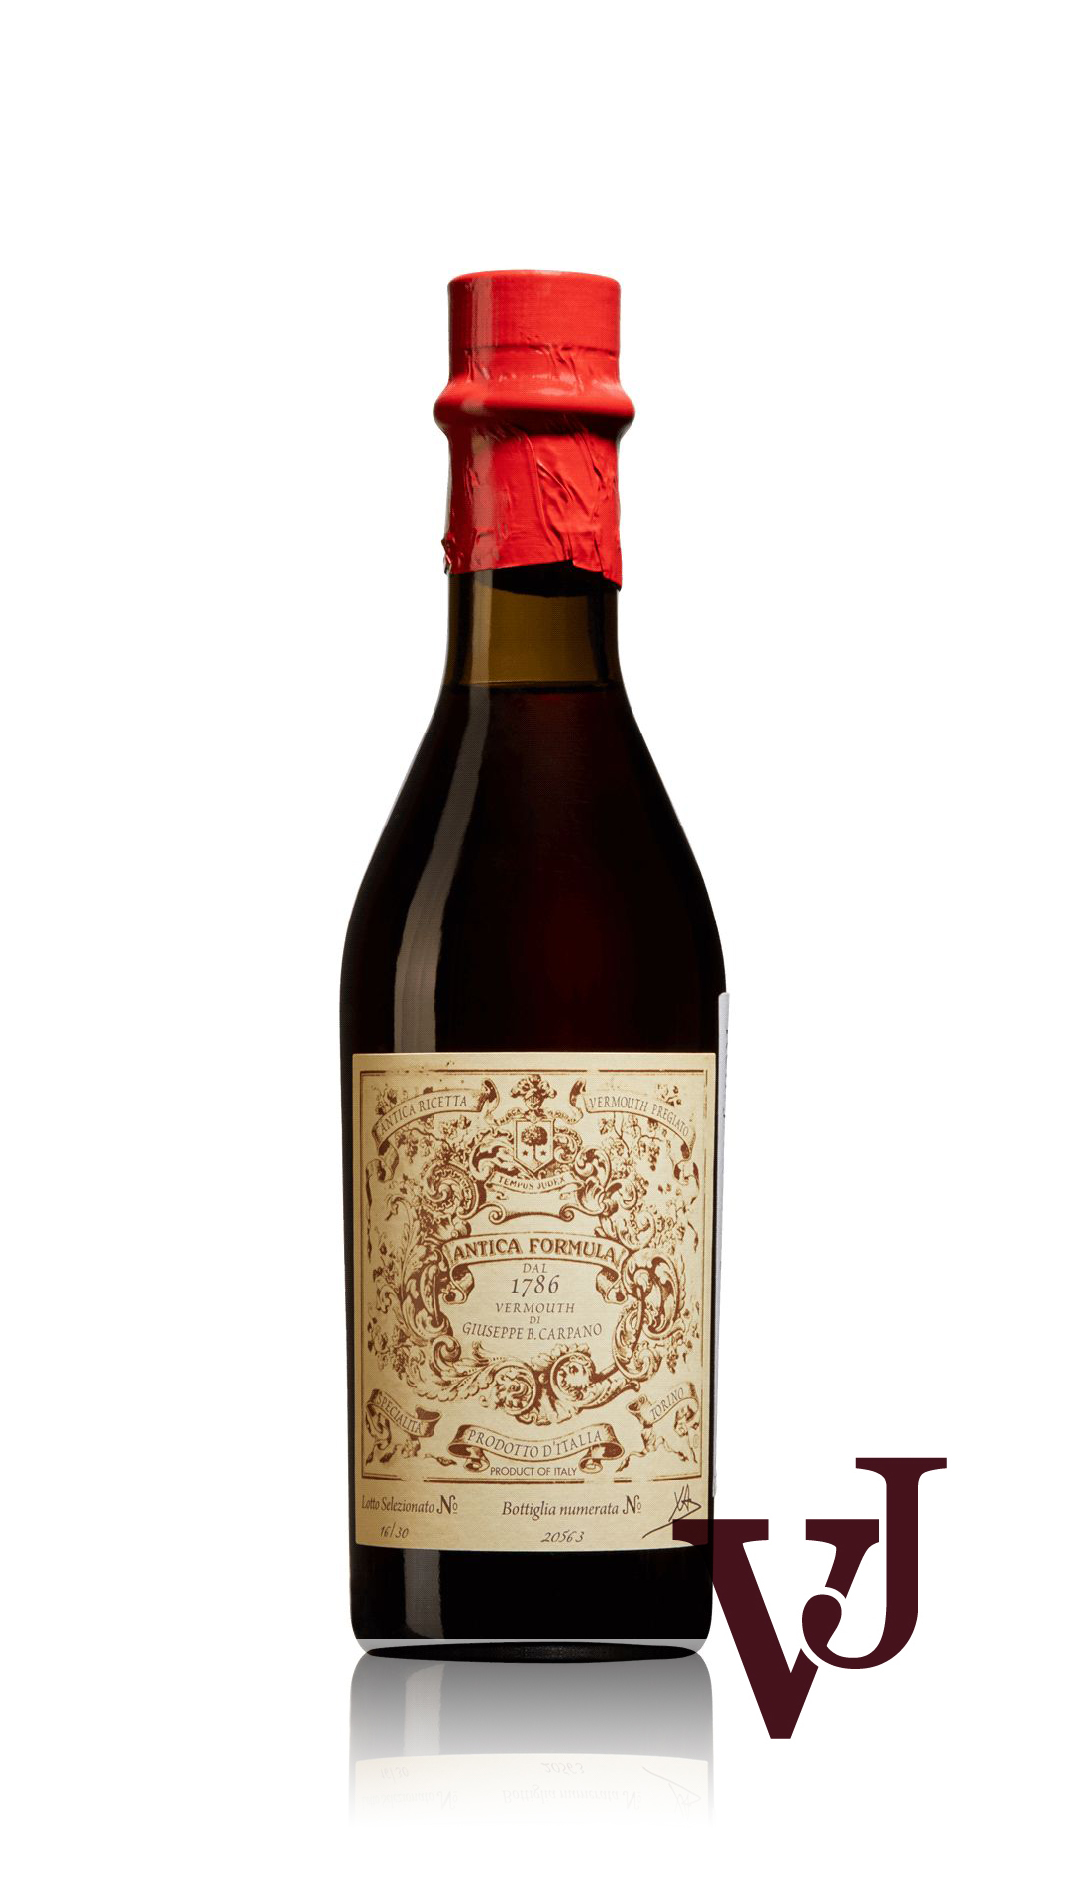 Övrigt vin - Carpano Antica Formula artikel nummer 7790802 från producenten Fratelli Branca från området Italien